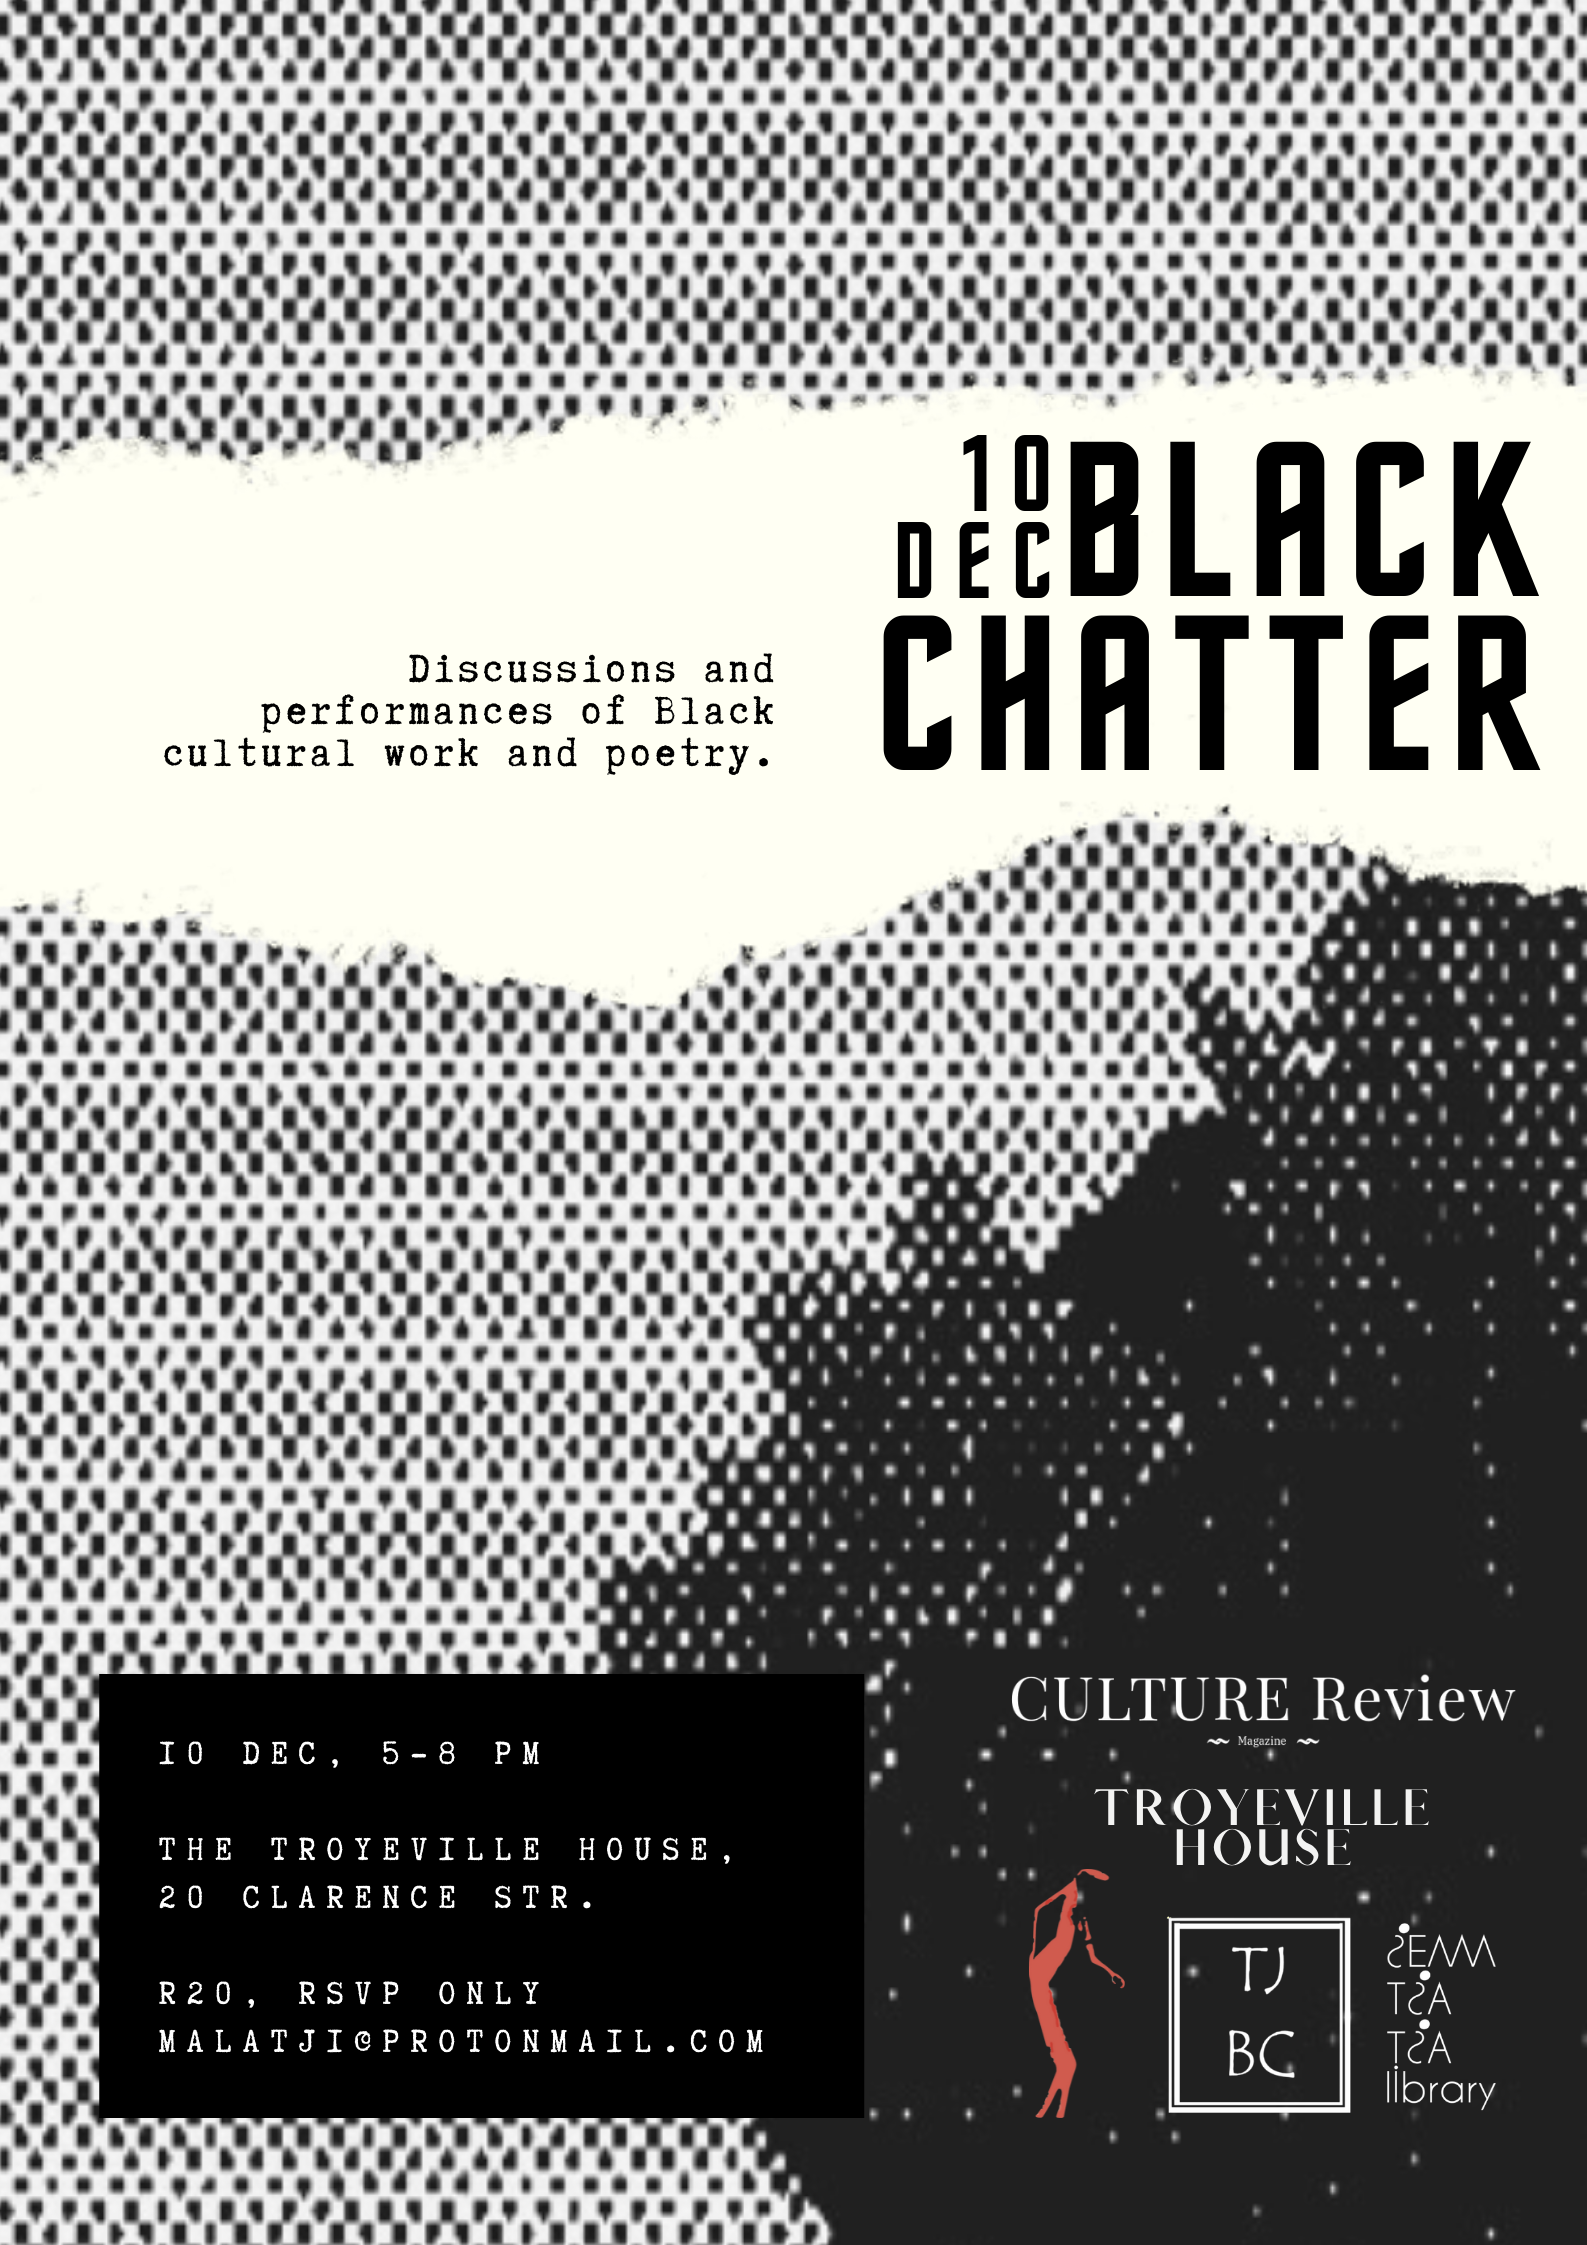 Event RSVP Information: Black Chatter